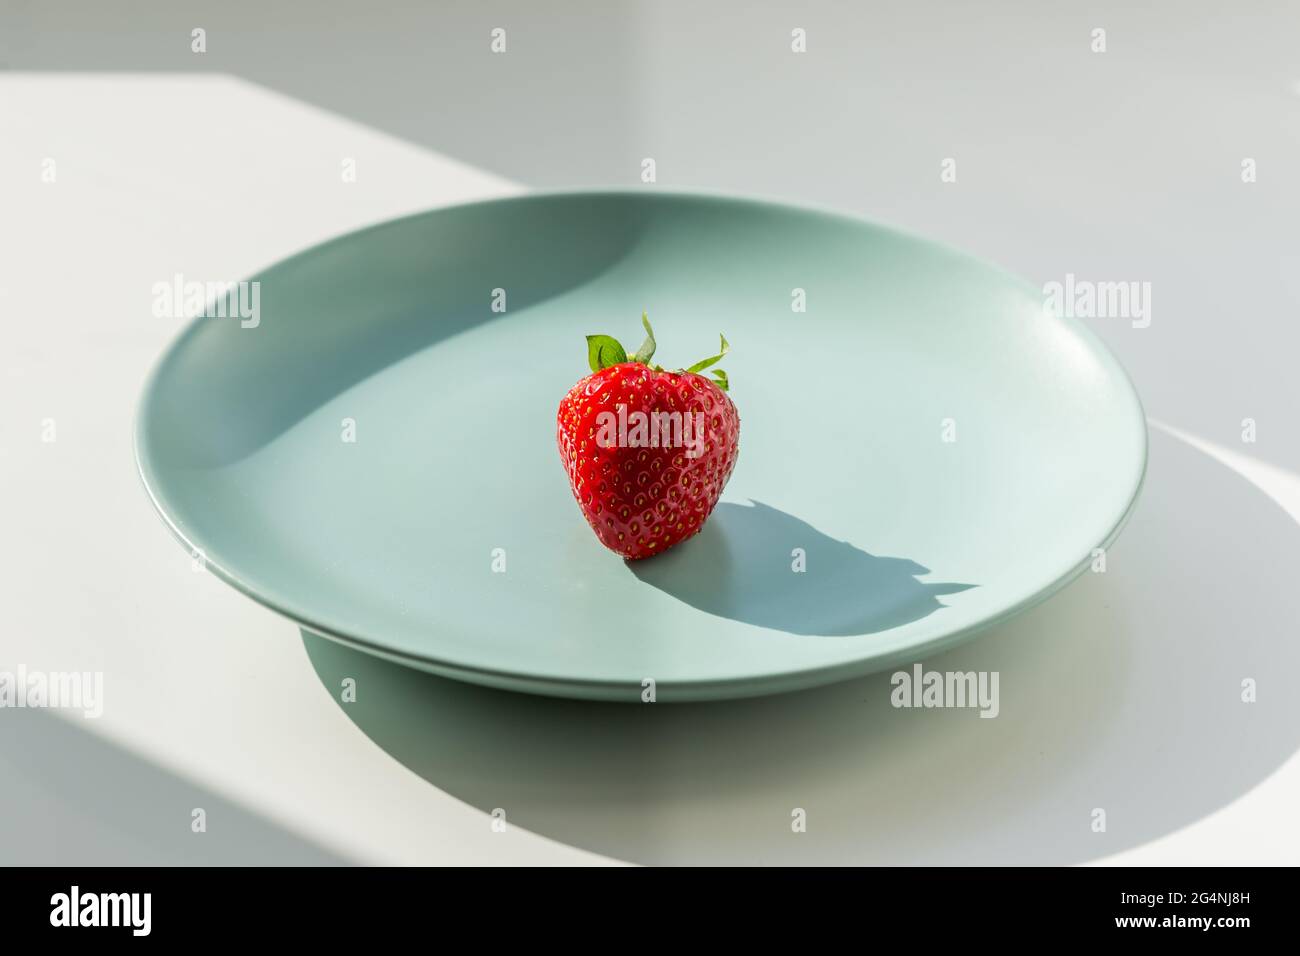 Eine rote Erdbeere auf dem grünen Teller. Gesundes Lifestyle-Konzept. Stockfoto